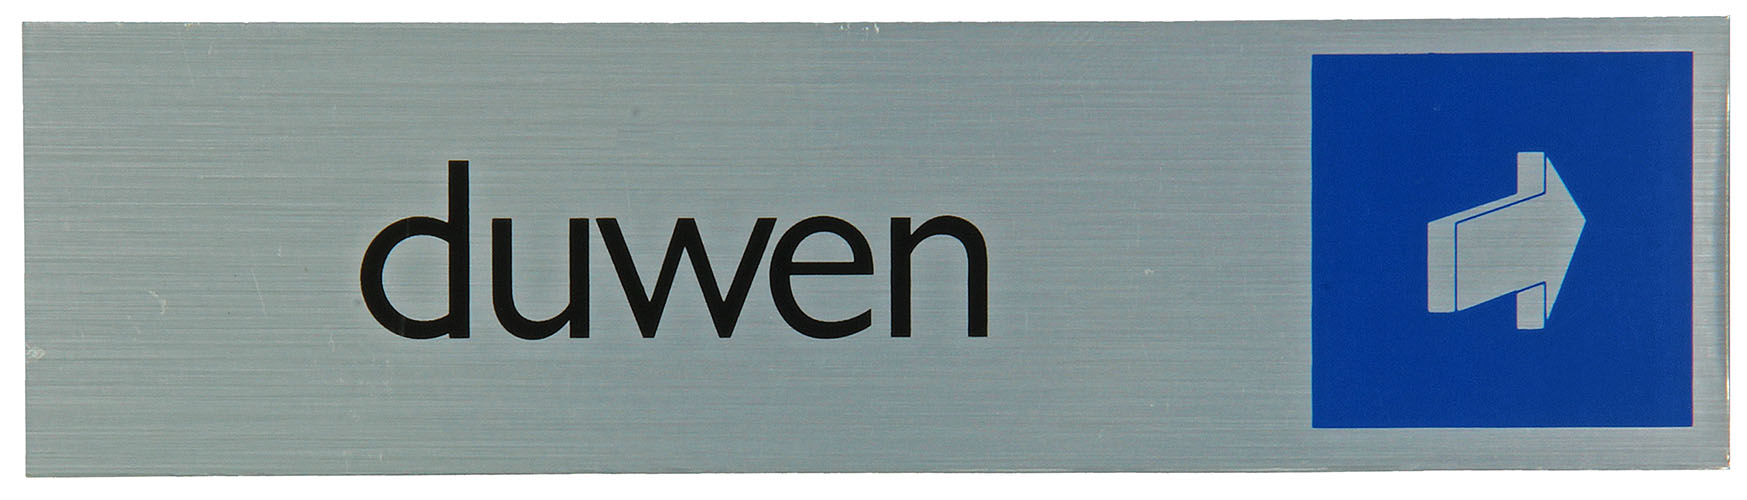 Pictogram Aluminium Look 'duwen' 16,5x4,4cm